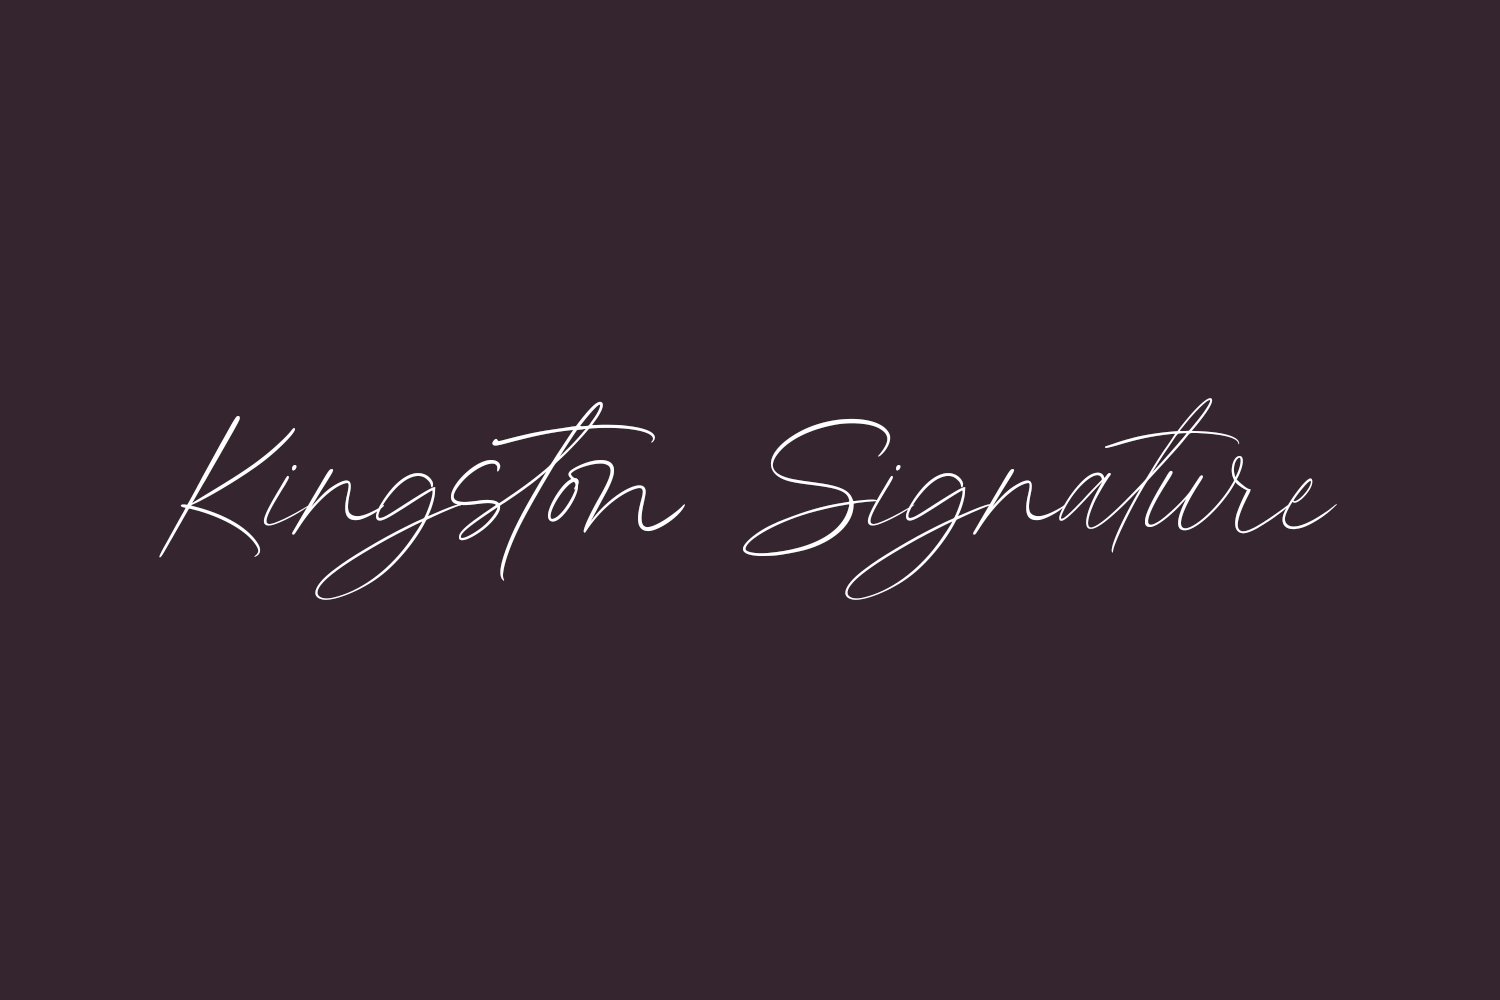 Kingston Signature Free Font